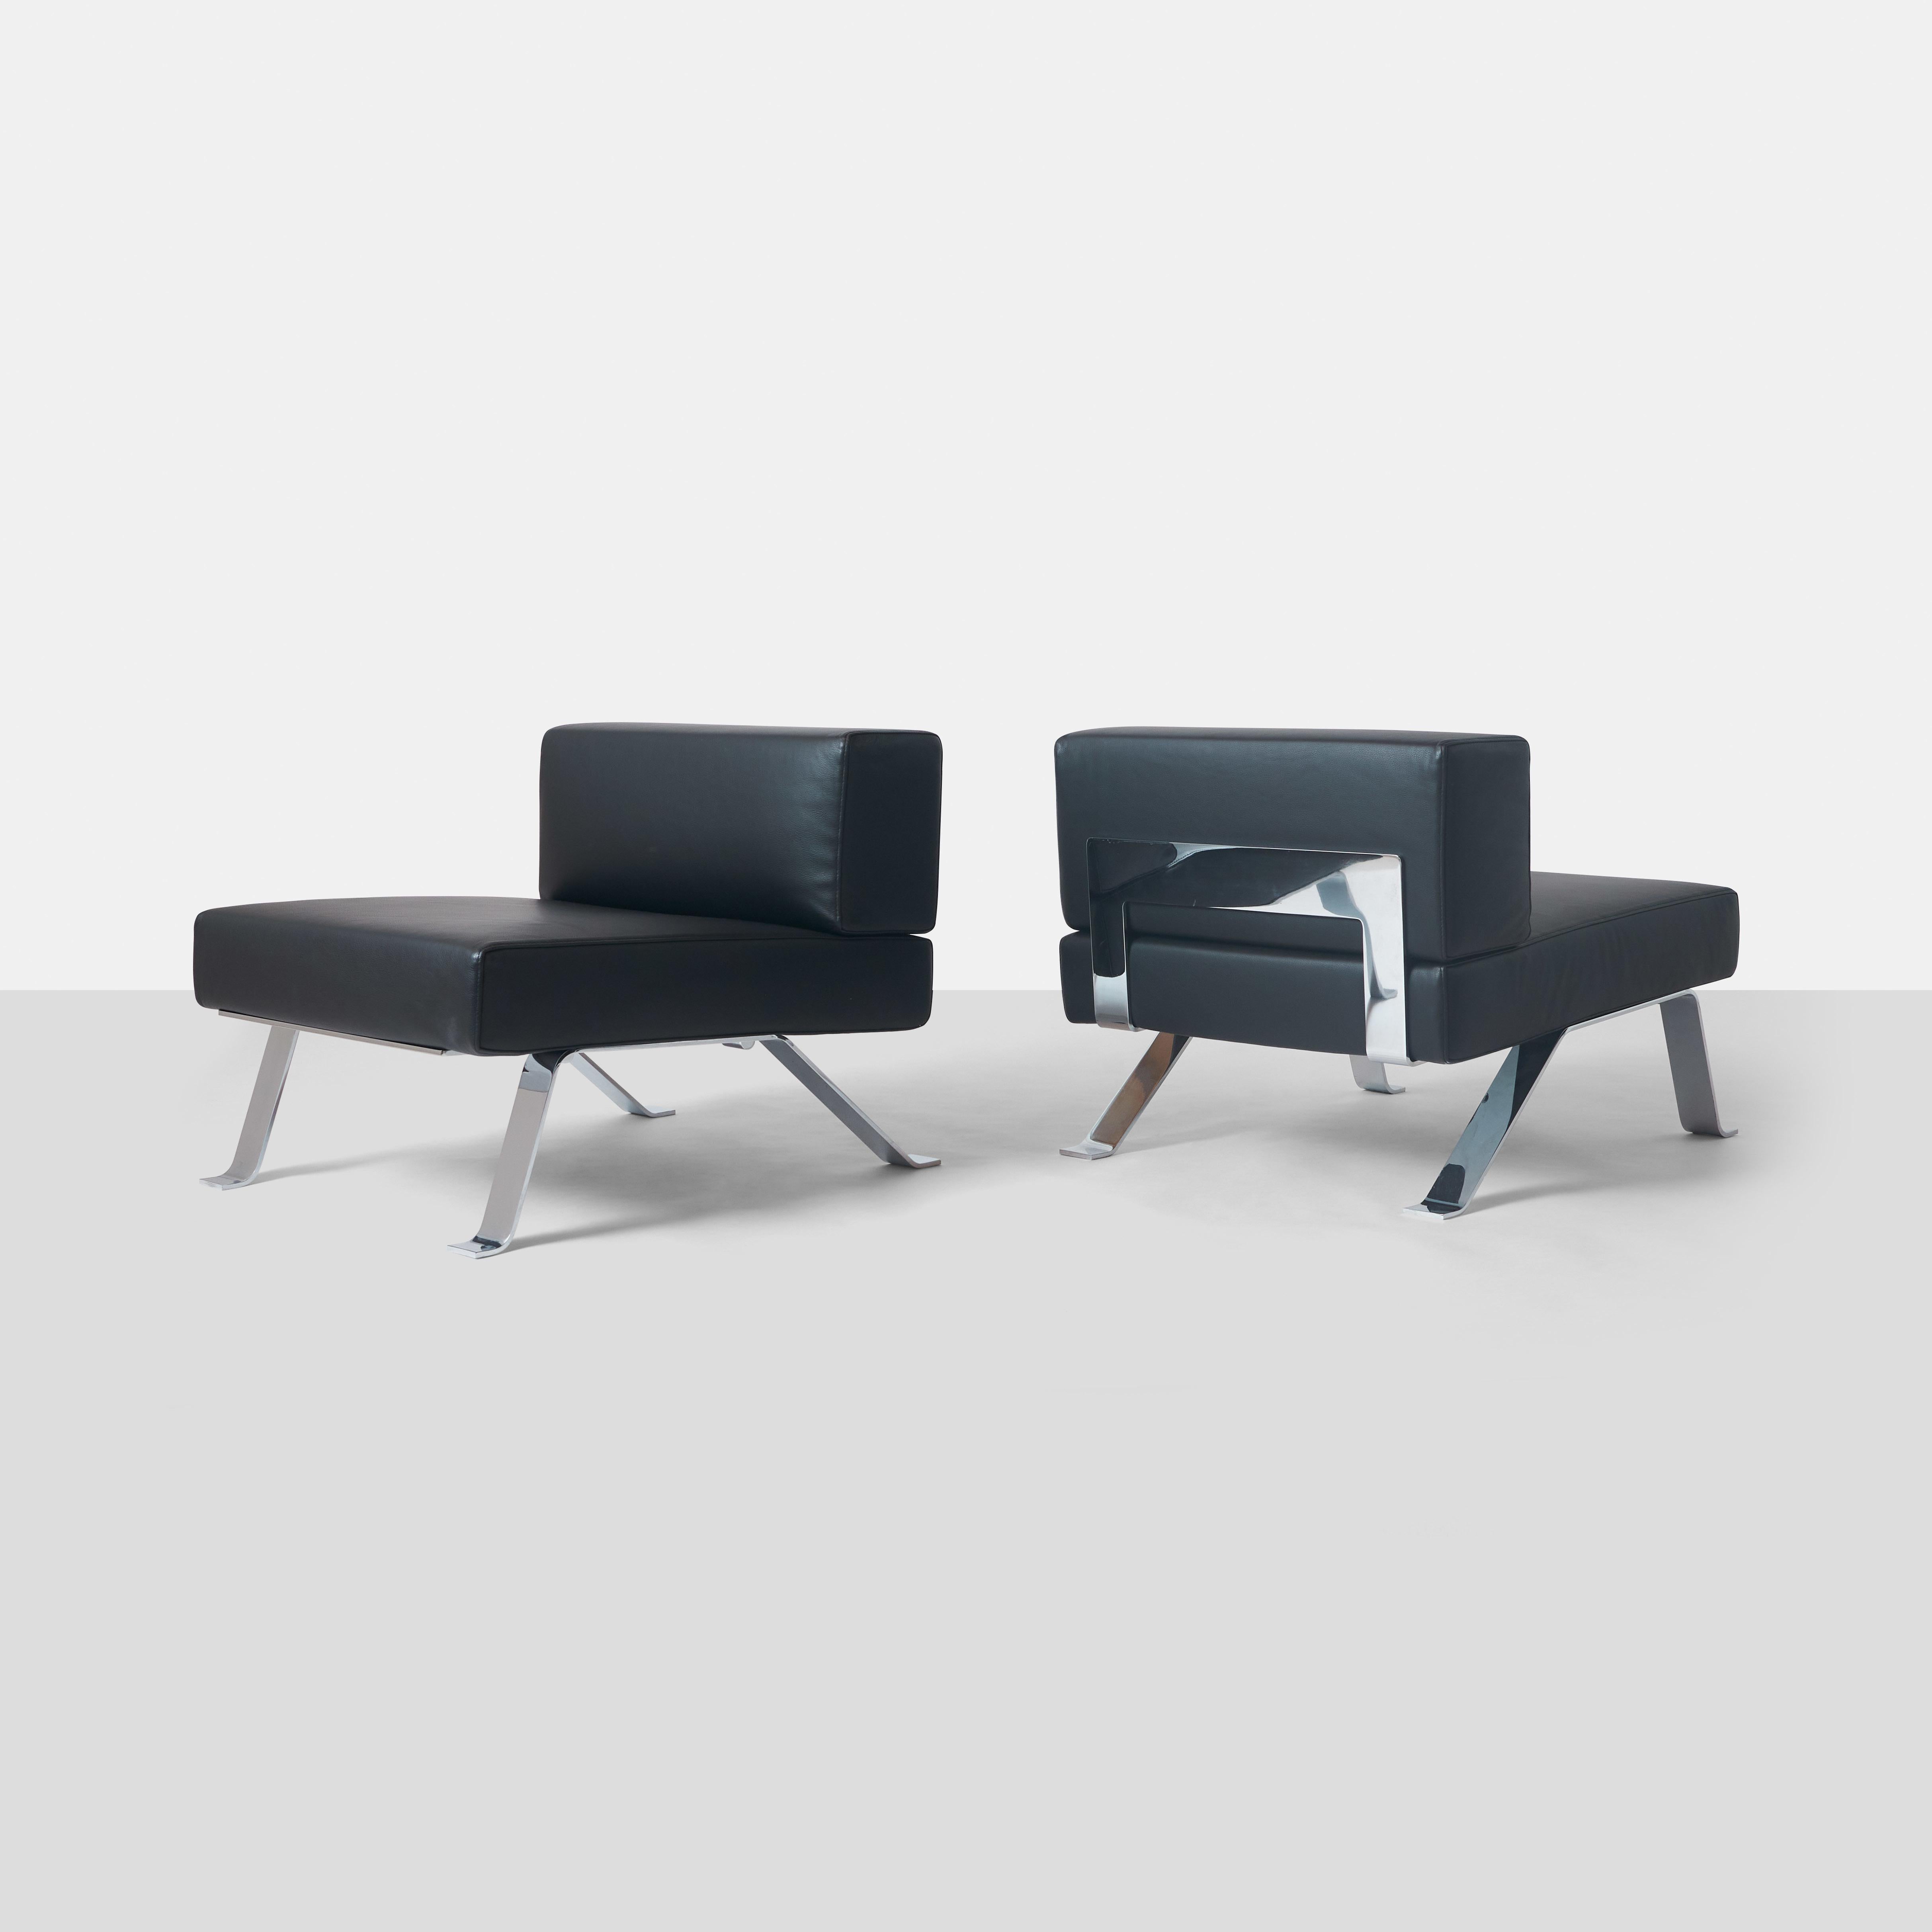 Ein Paar 512 Ombra Lounge Chairs von Charlotte Perriand für Cassina mit verchromten Stahlrahmen und schwarzer Lederpolsterung. 
Auf der Unterseite ist Charlotte Perriand Cassina Made in Italy vermerkt.